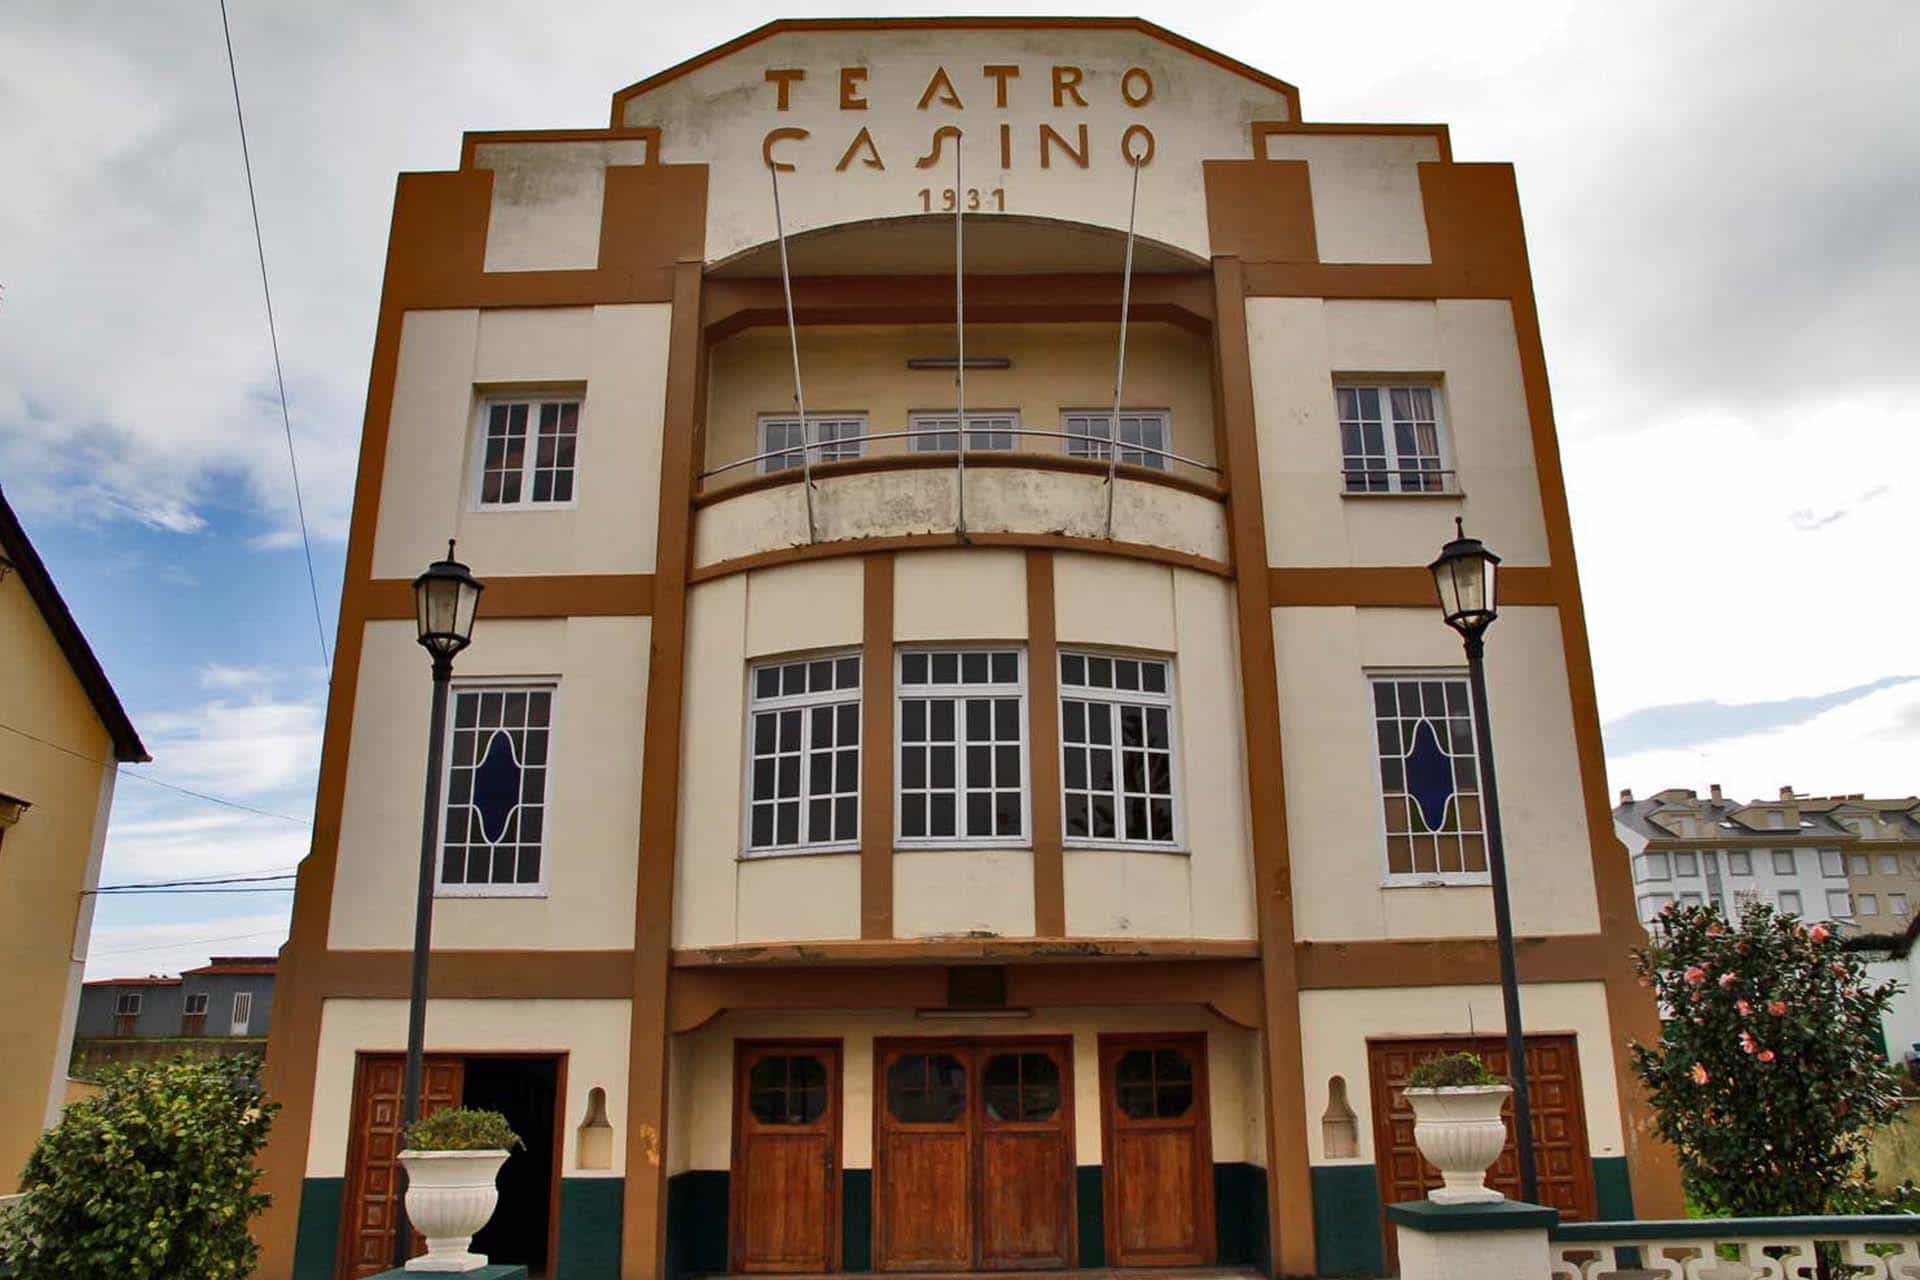 Teatro Casino